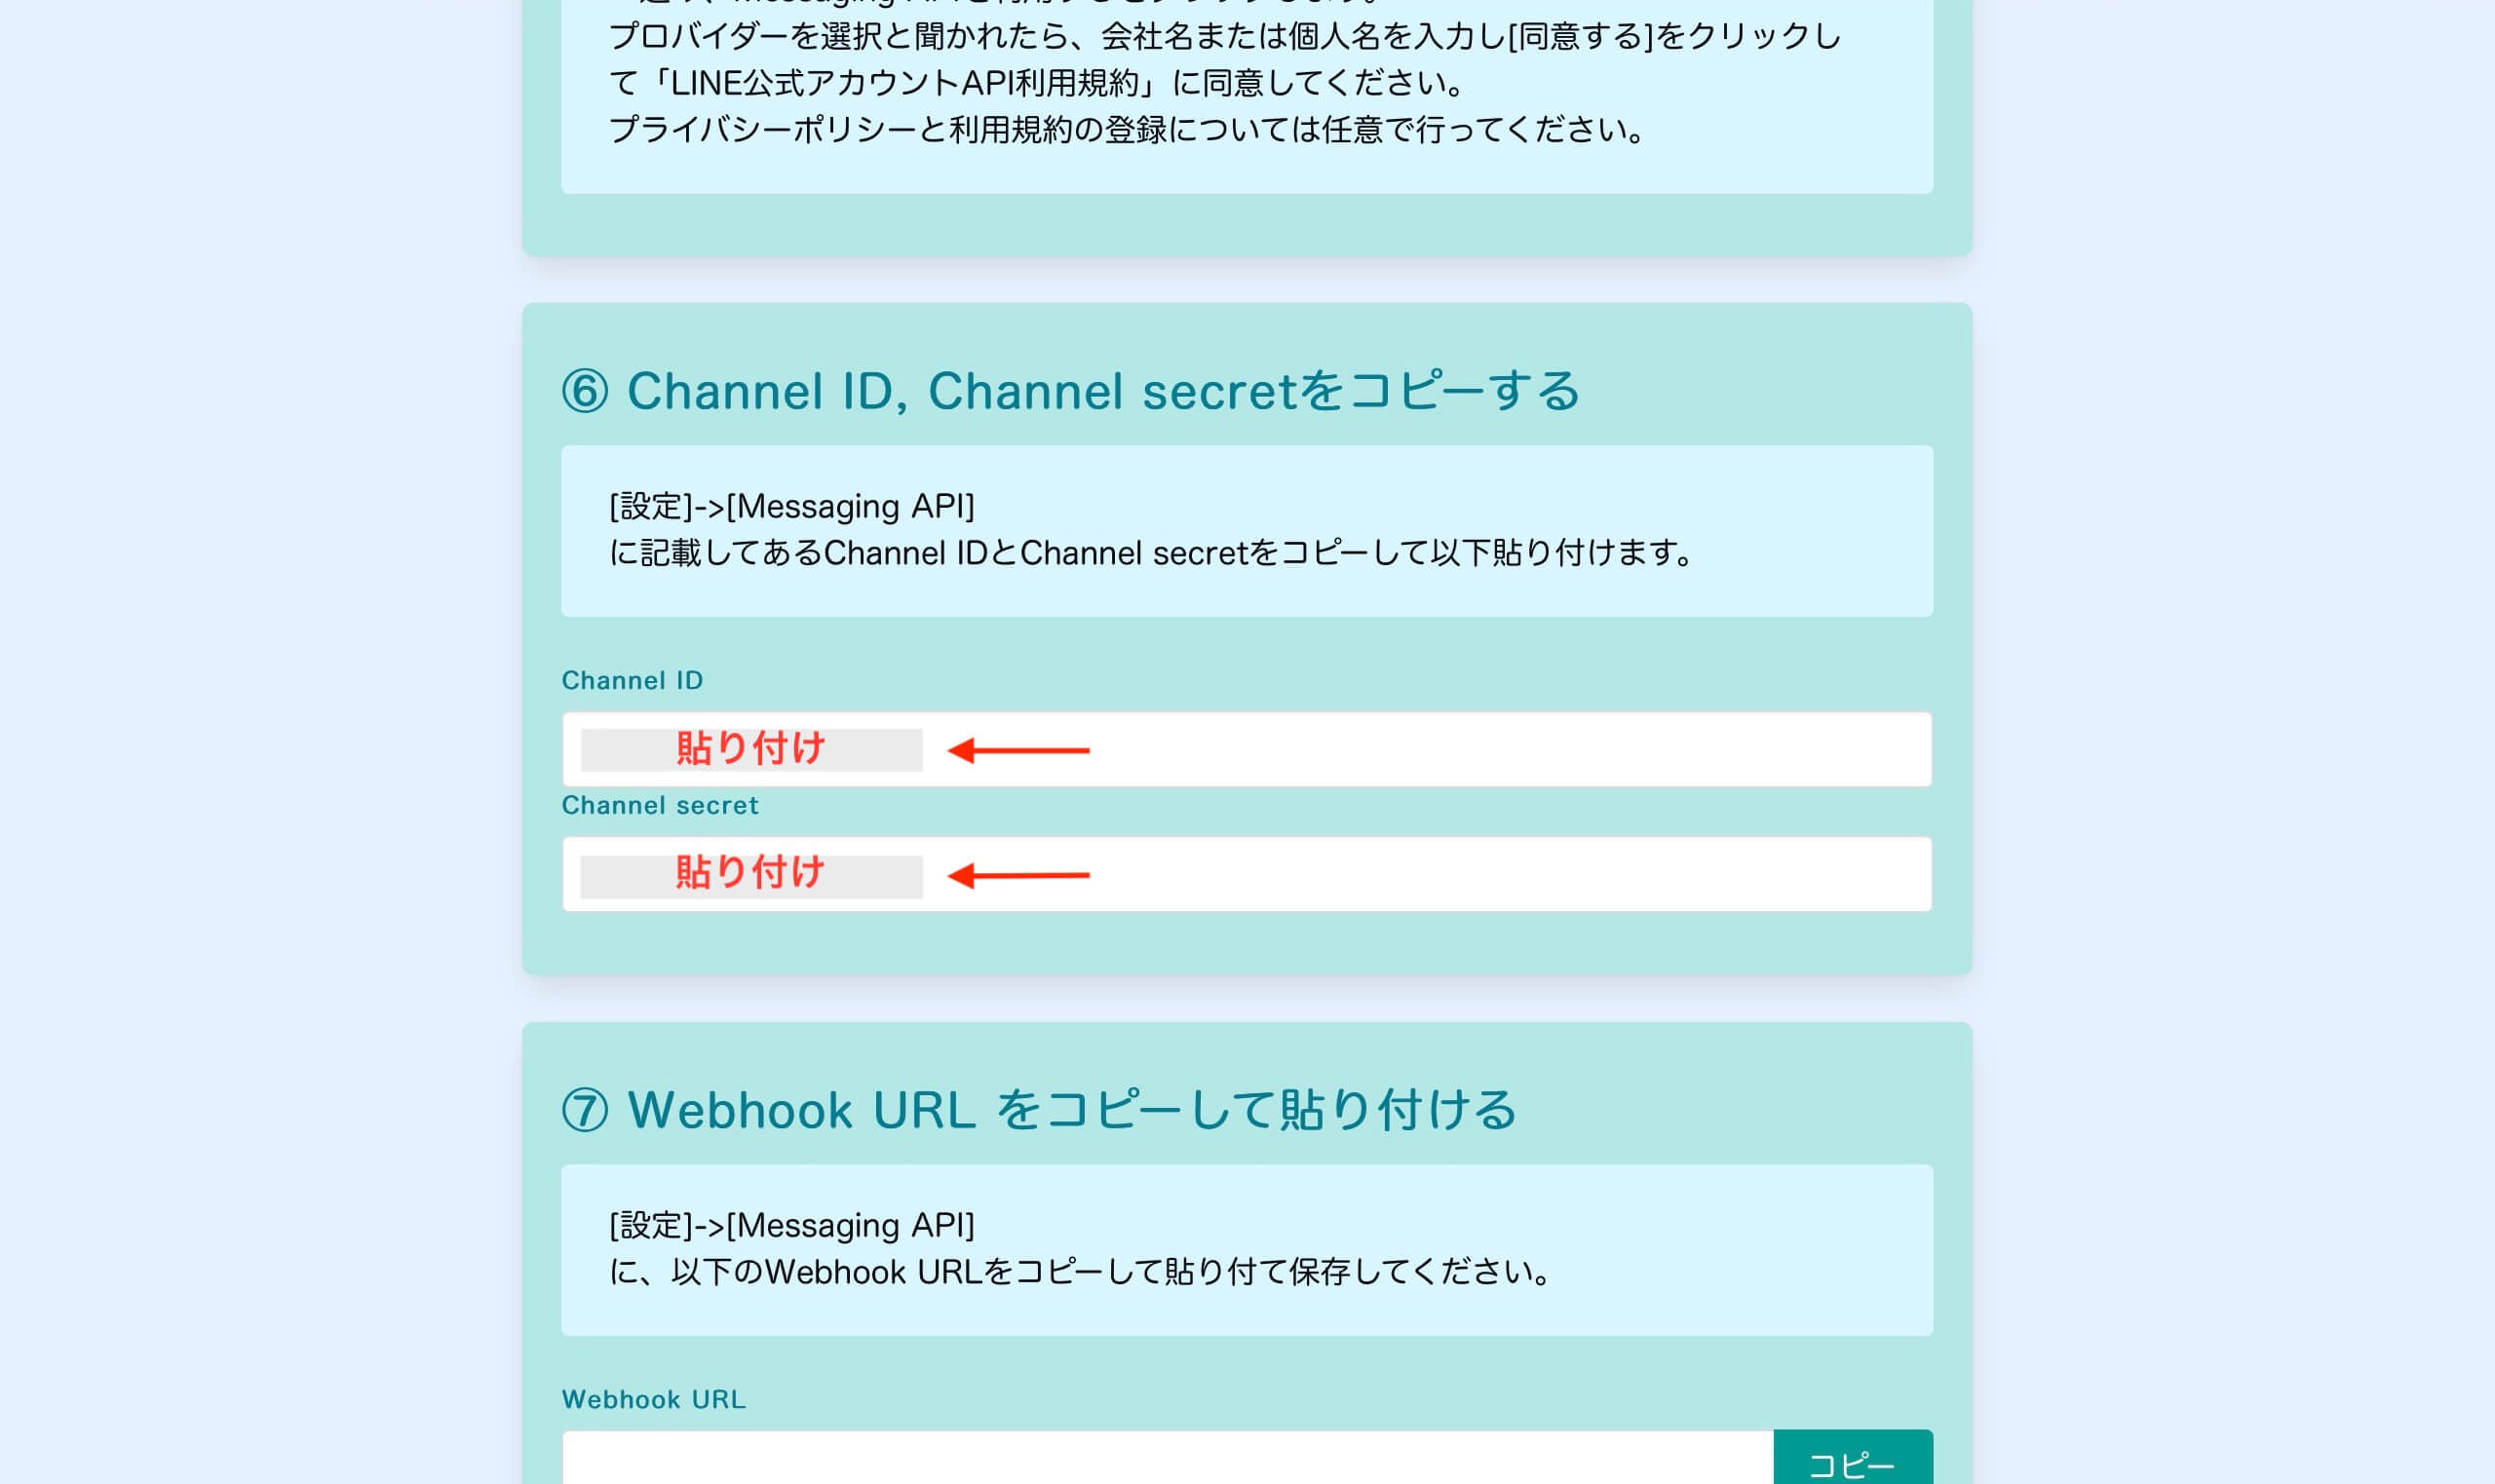 [Channel ID] と [Channel secret] をそれぞれ貼り付けてください。